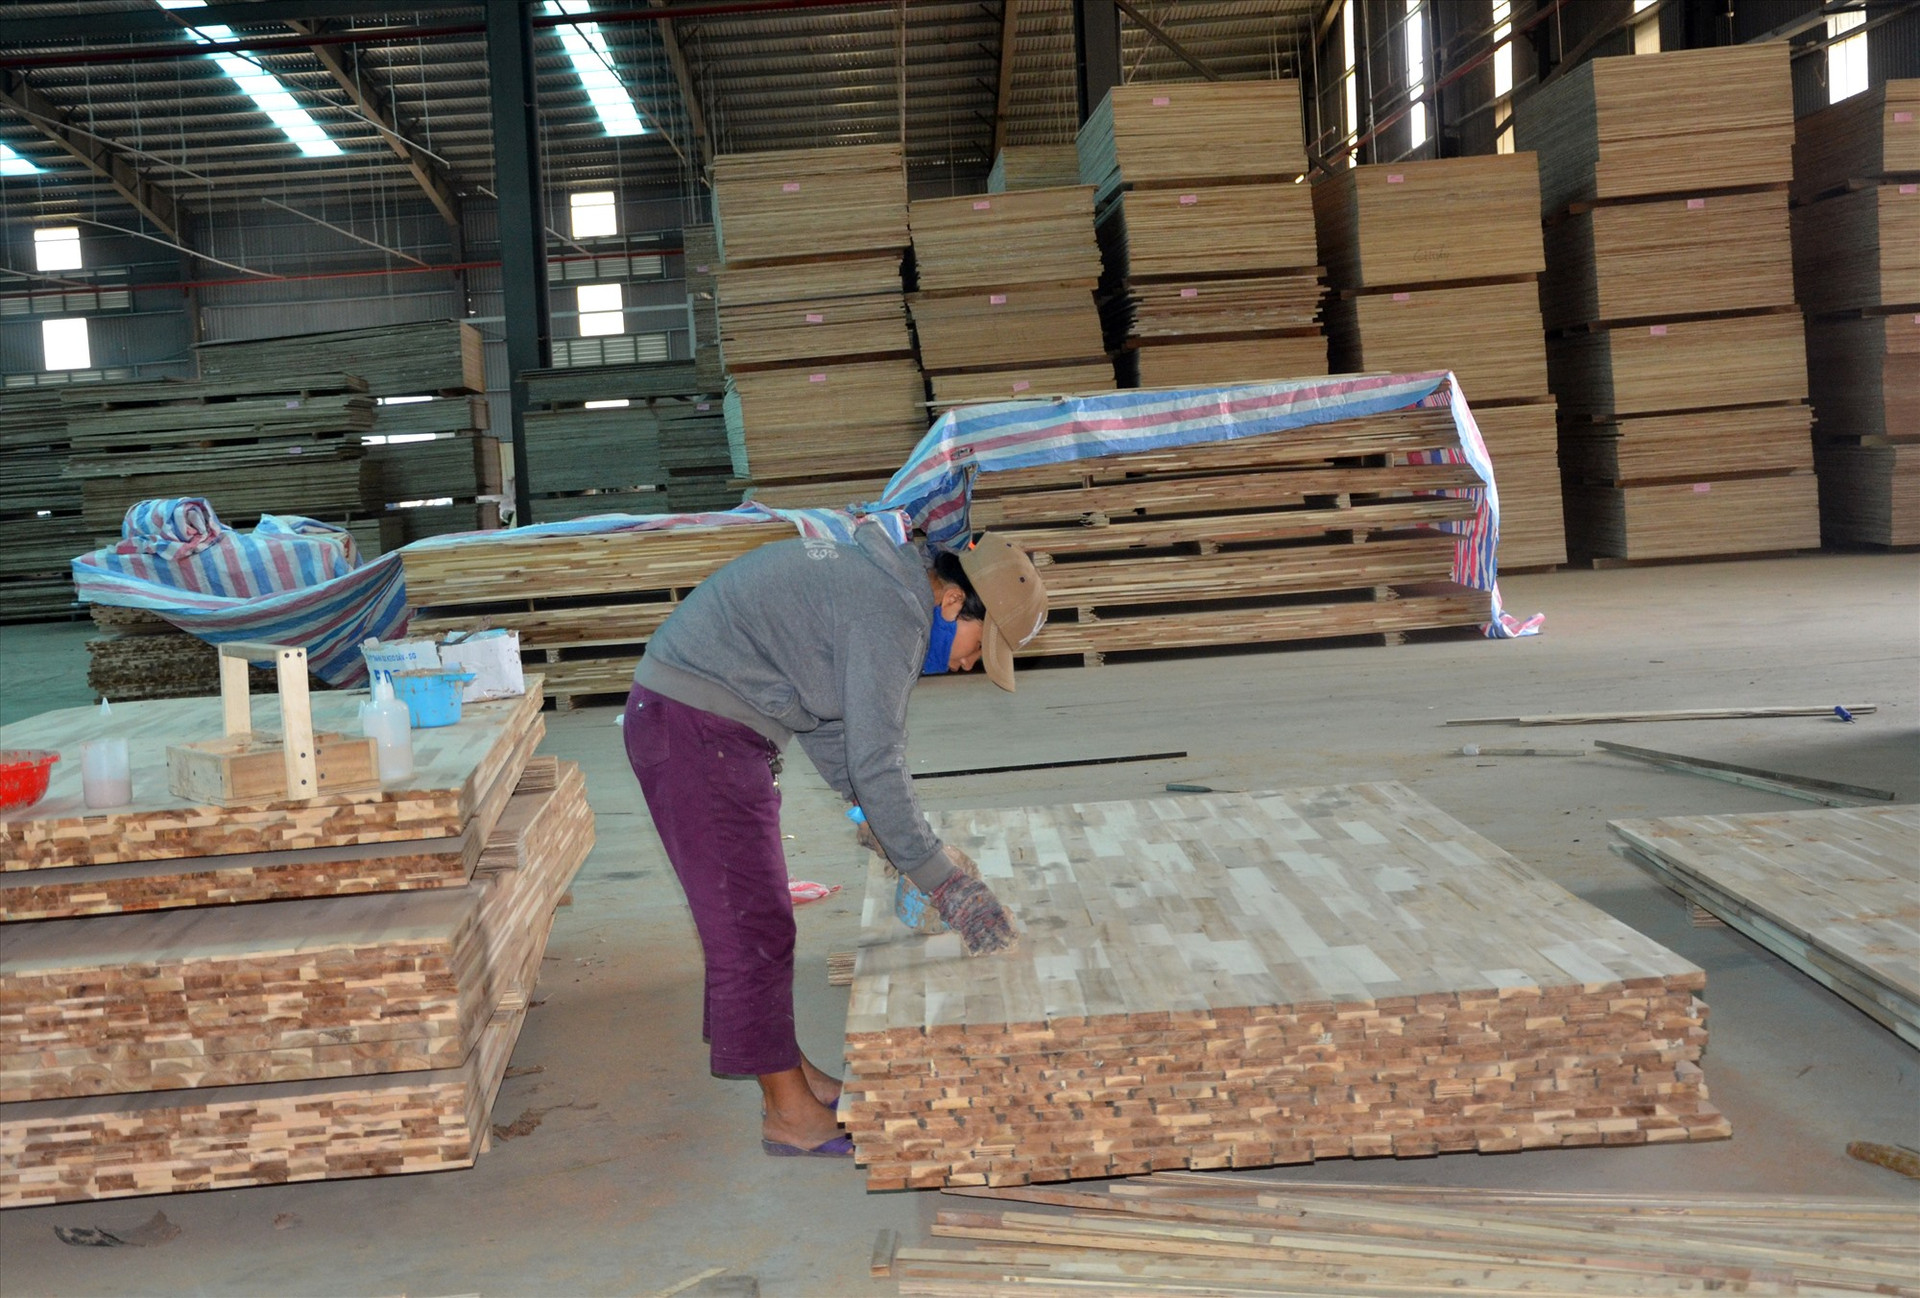 Giảm nhập khẩu phụ liệu, chủ động nguồn nguyên liệu, đẩy nhanh trồng rừng gỗ lớn là những biện pháp để phục hồi ngành công nghiệp chế biến gỗ bị ảnh hưởng do dịch Covid-19. Ảnh: N.T